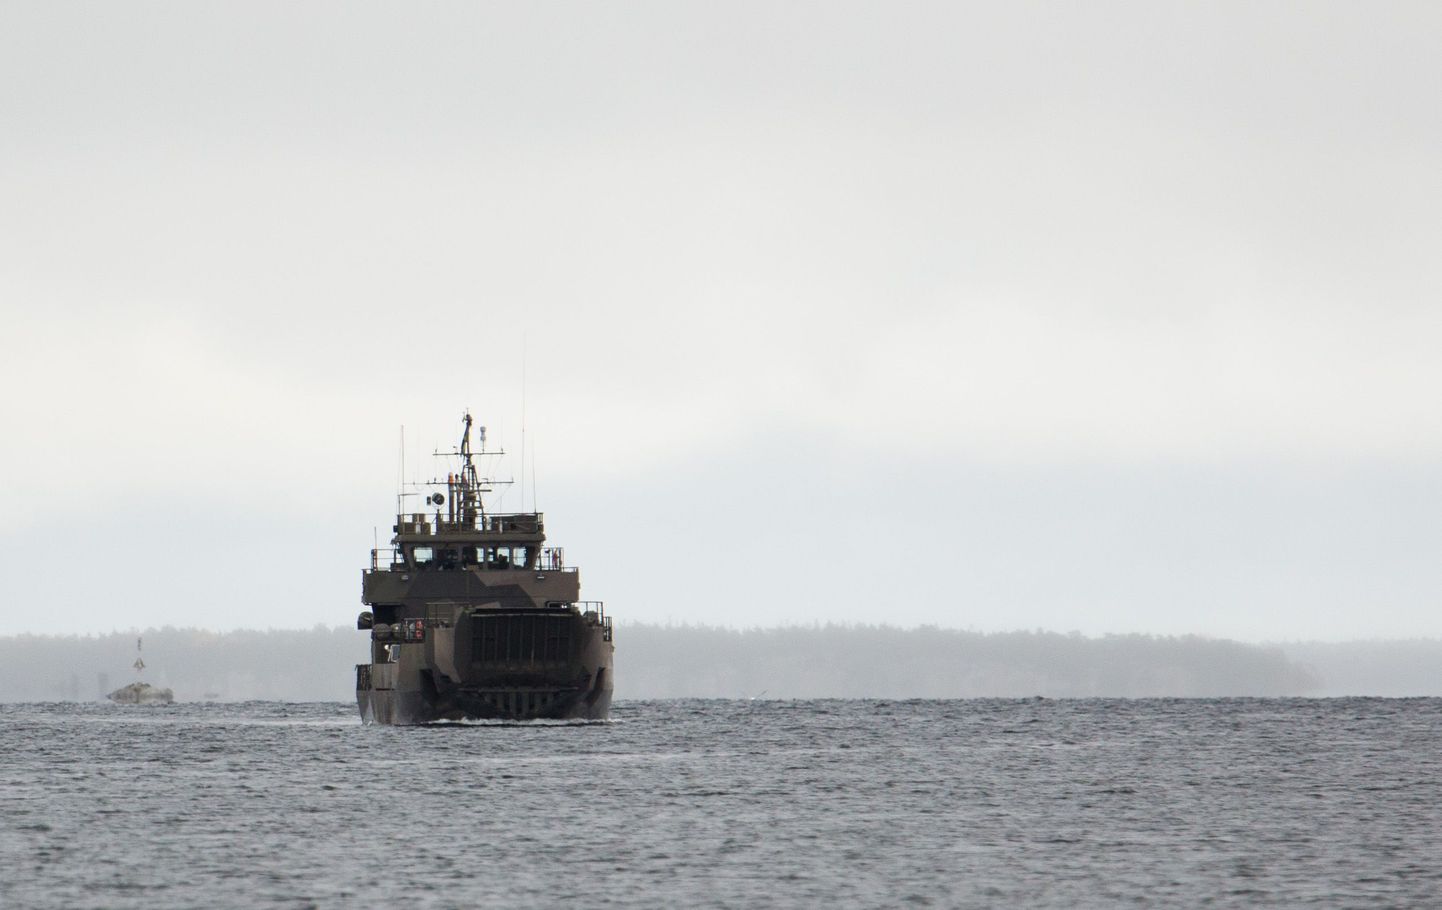 Rootsi merevägi otsib tõendeid võõrast veealusest tegevusest Stockholmi saarestikus.